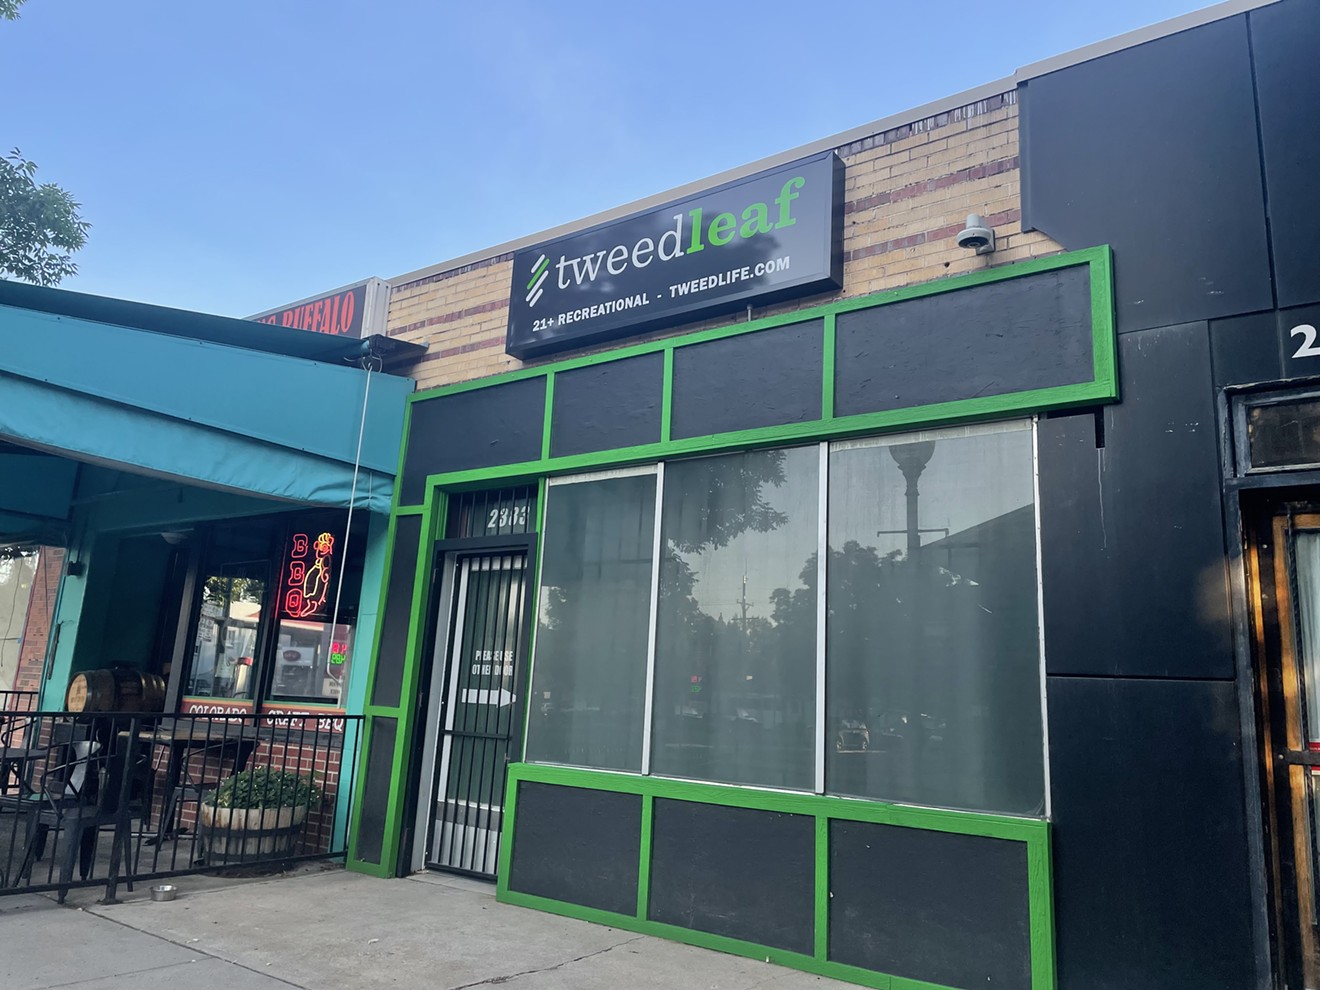 TweedLeaf operates seven stores across Colorado.